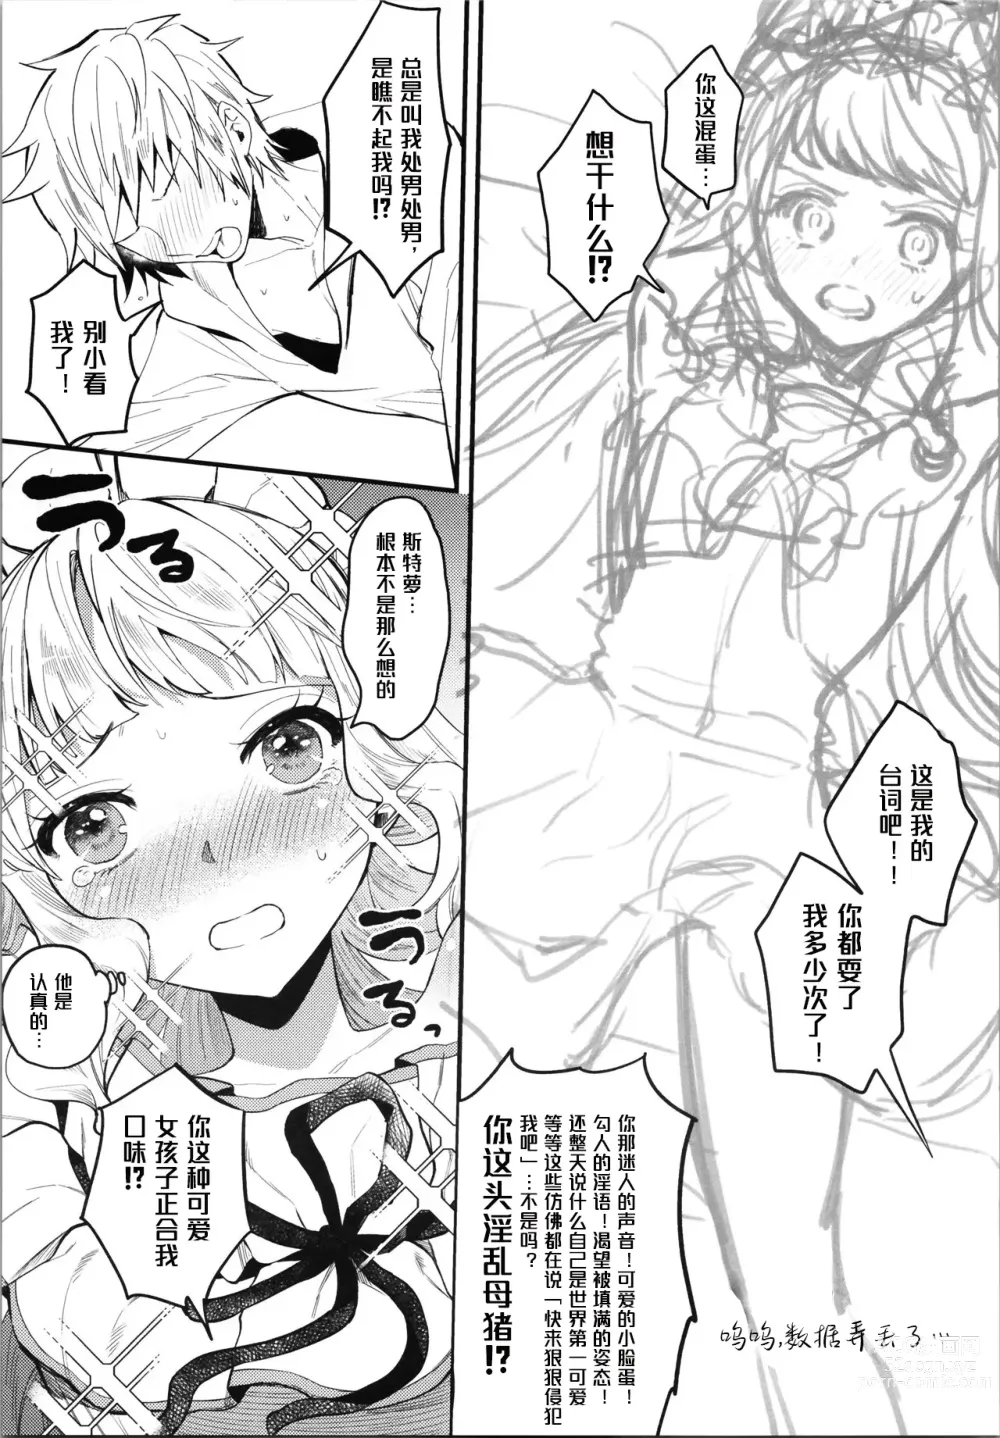 Page 6 of doujinshi 与卡莉奥斯特罗没羞没臊地H性爱